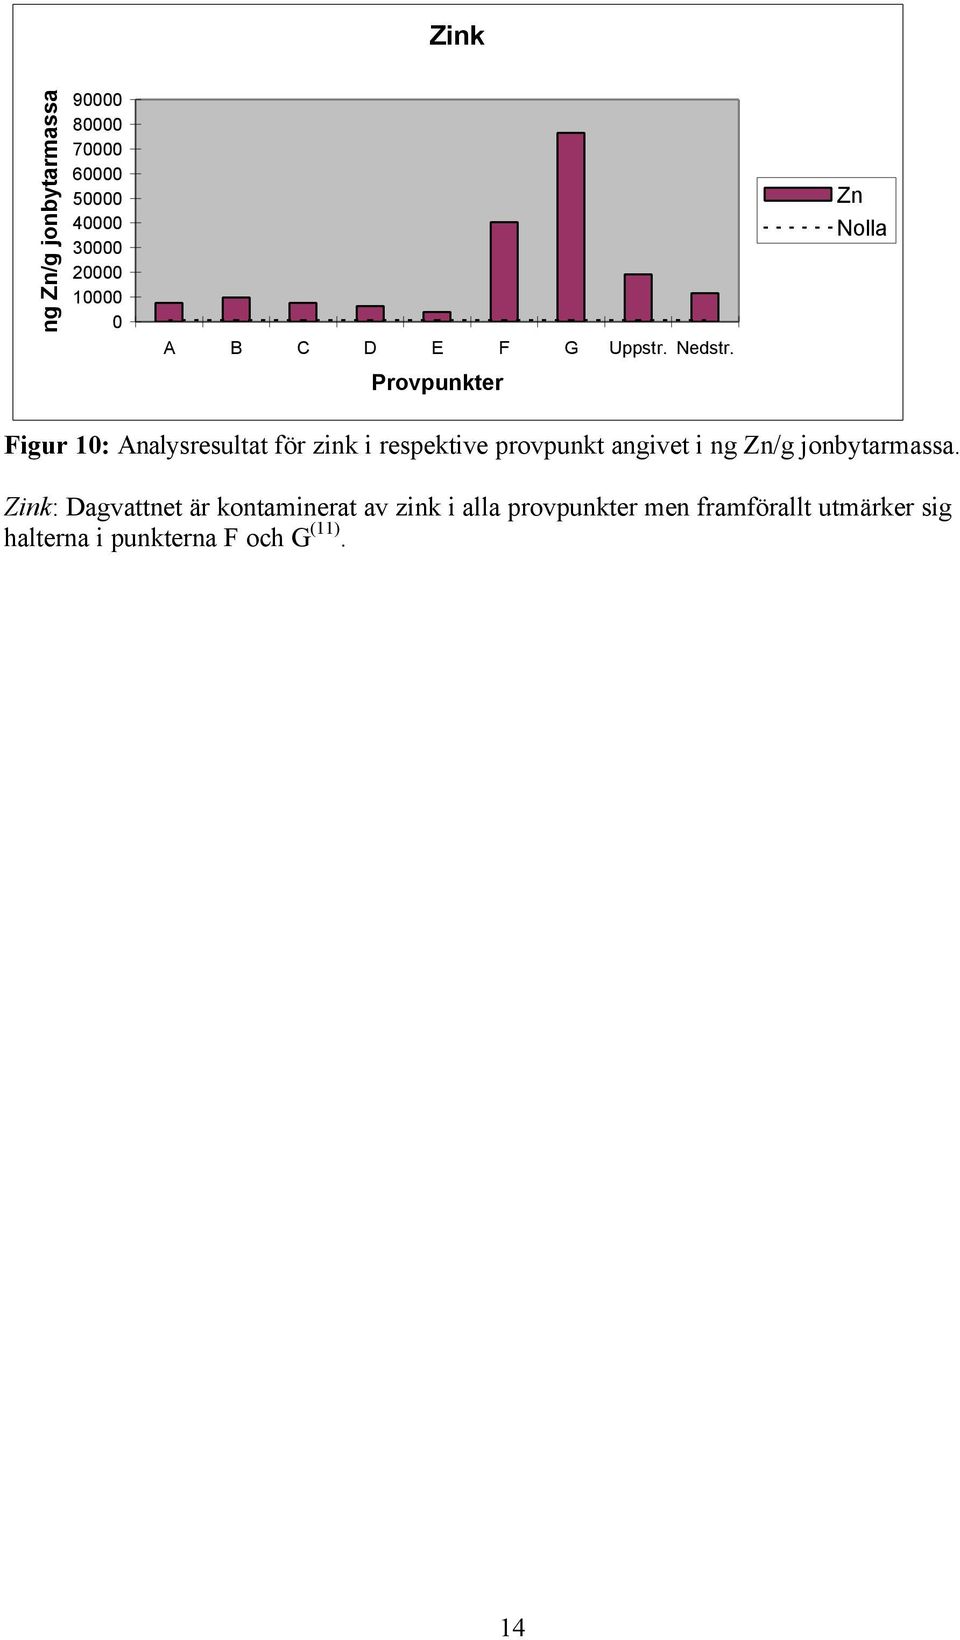 Zn Nolla Provpunkter Figur 10: Analysresultat för zink i respektive provpunkt angivet i